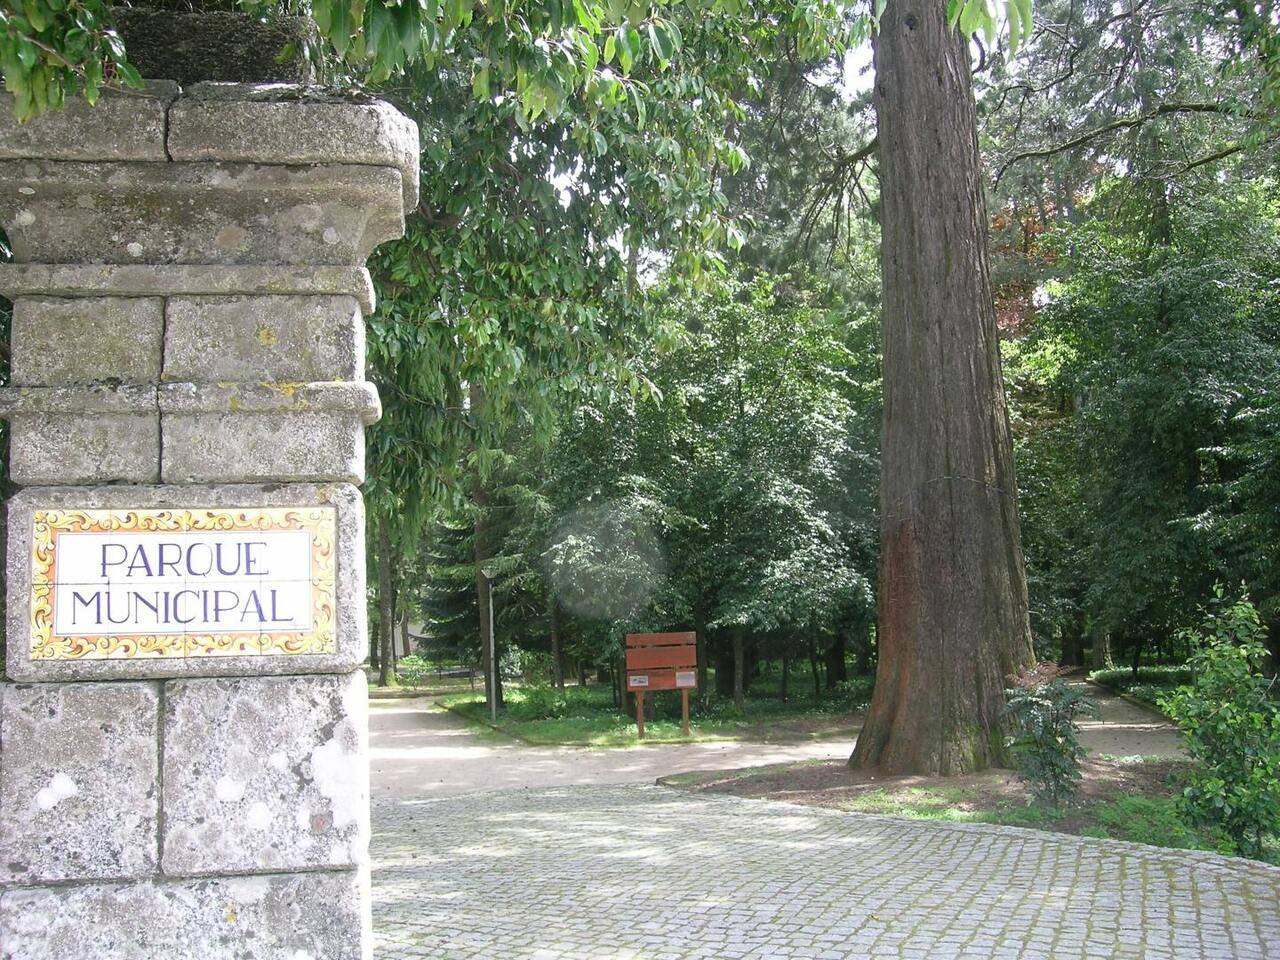 Parque Municipal de Trancoso